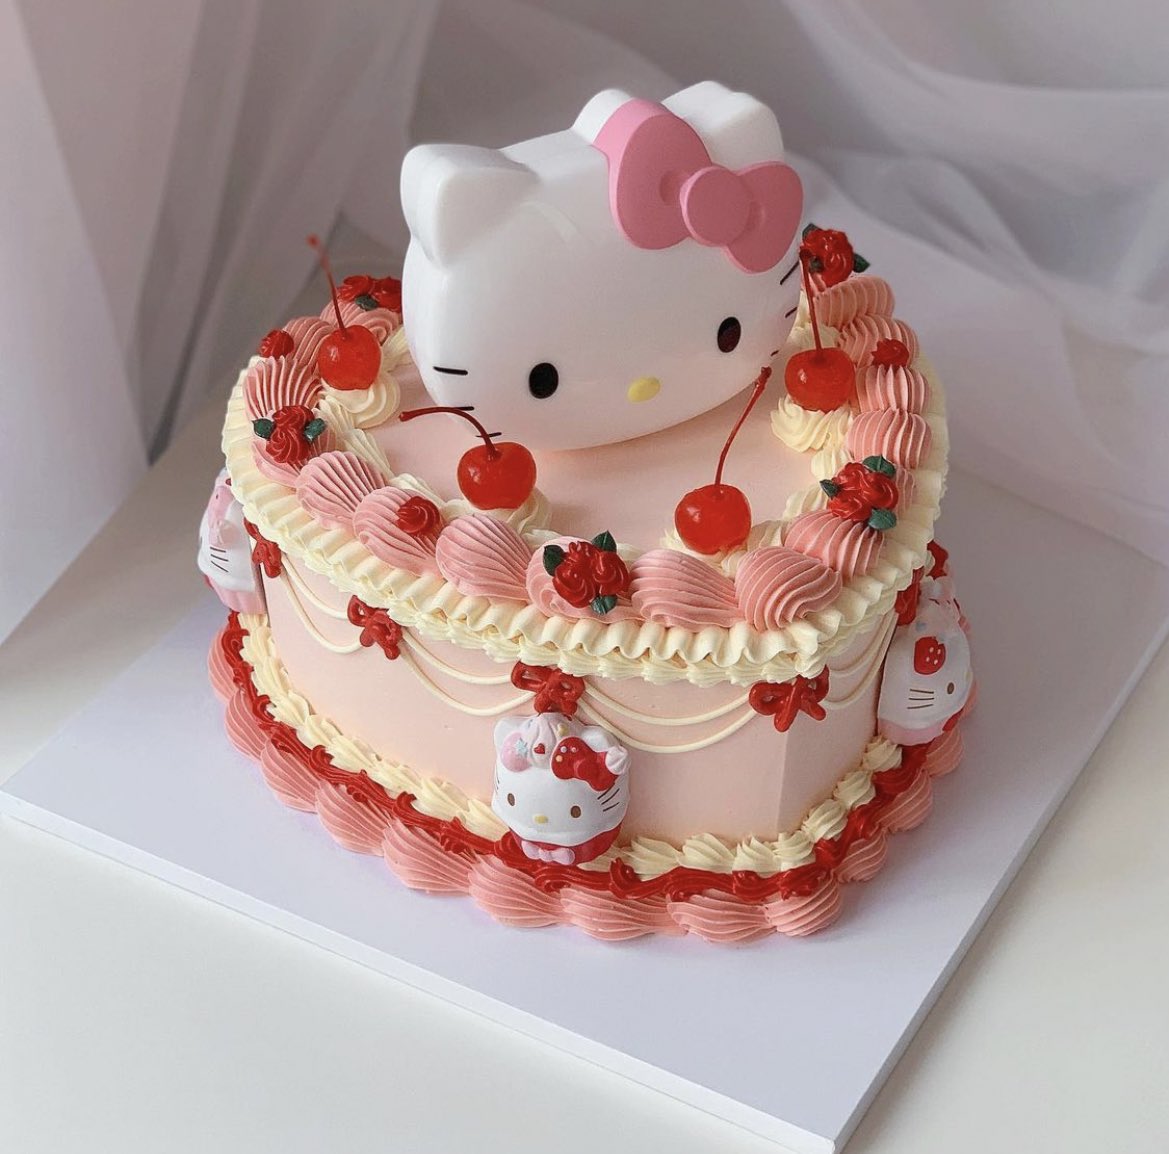 JELLY CAKE - Hello Kitty Red Velvet - Plushie – 10AM CAKE